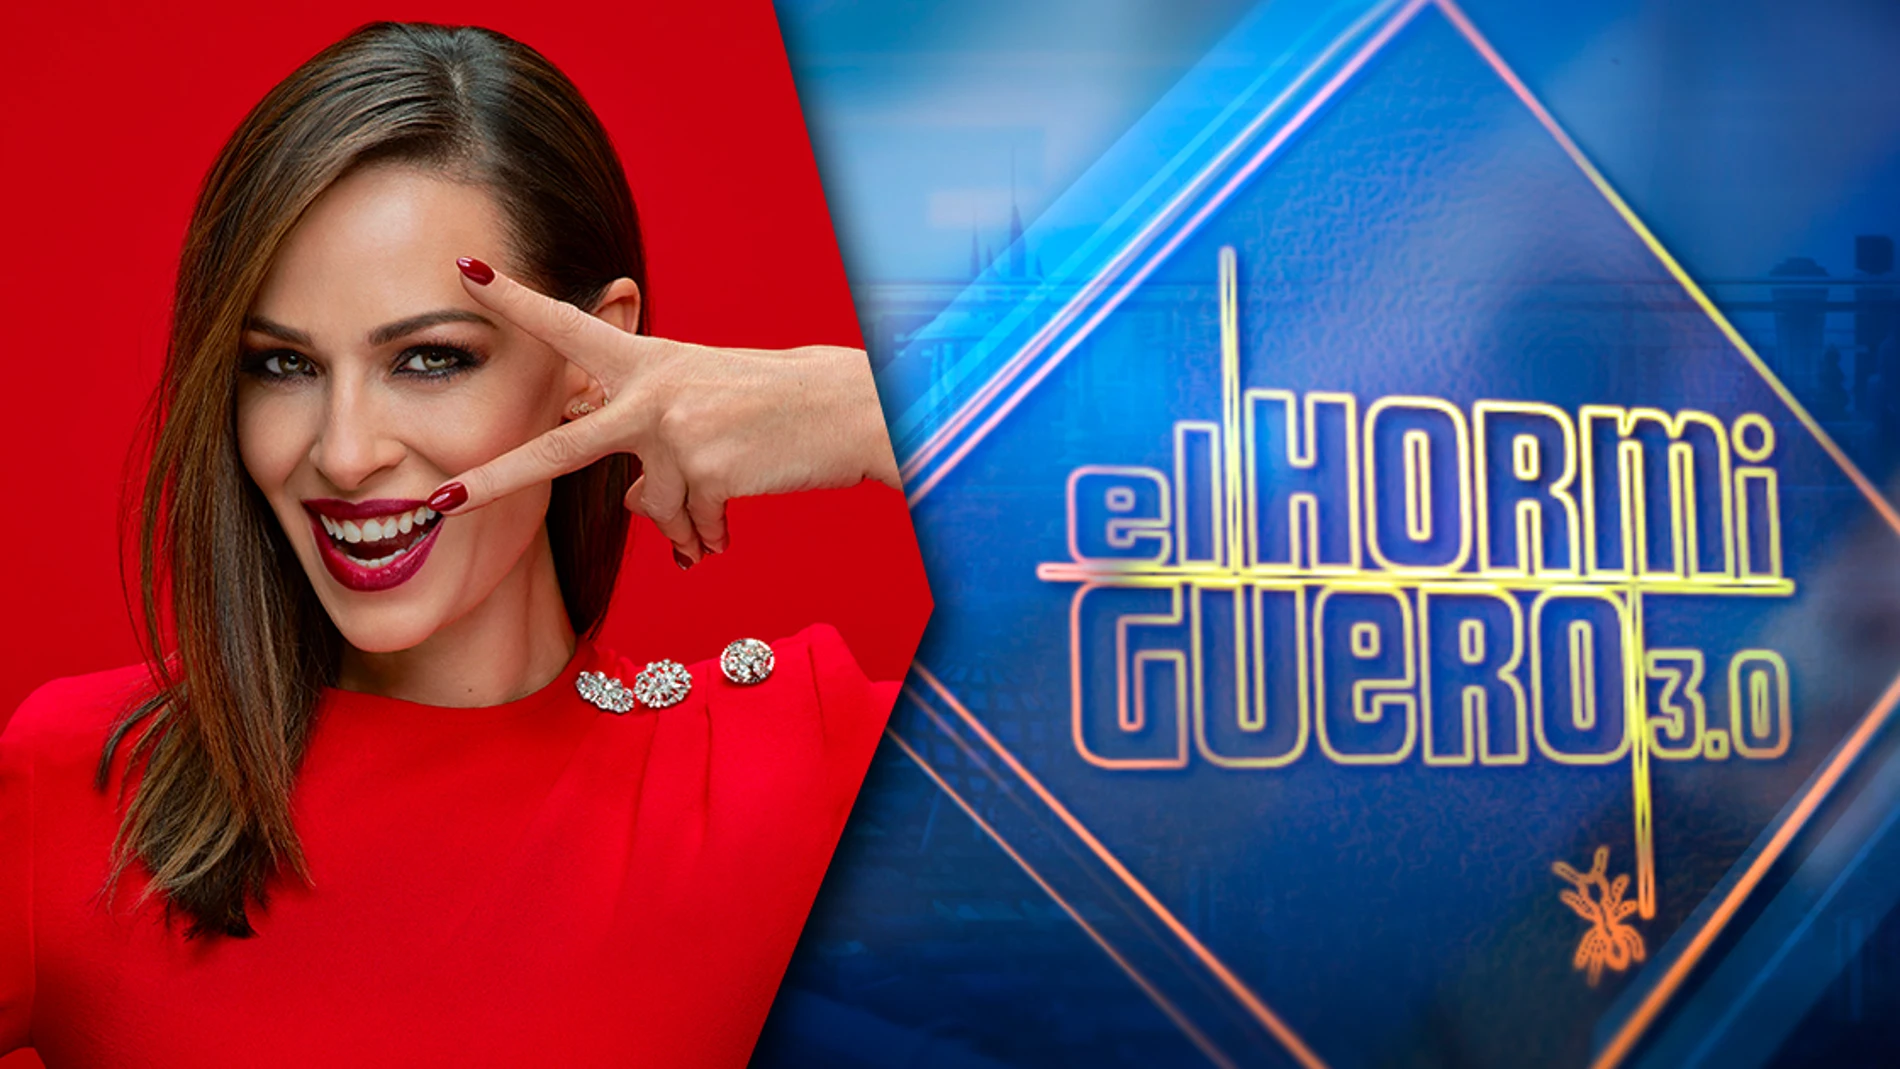 El miércoles Eva González se divertirá en 'El Hormiguero 3.0'